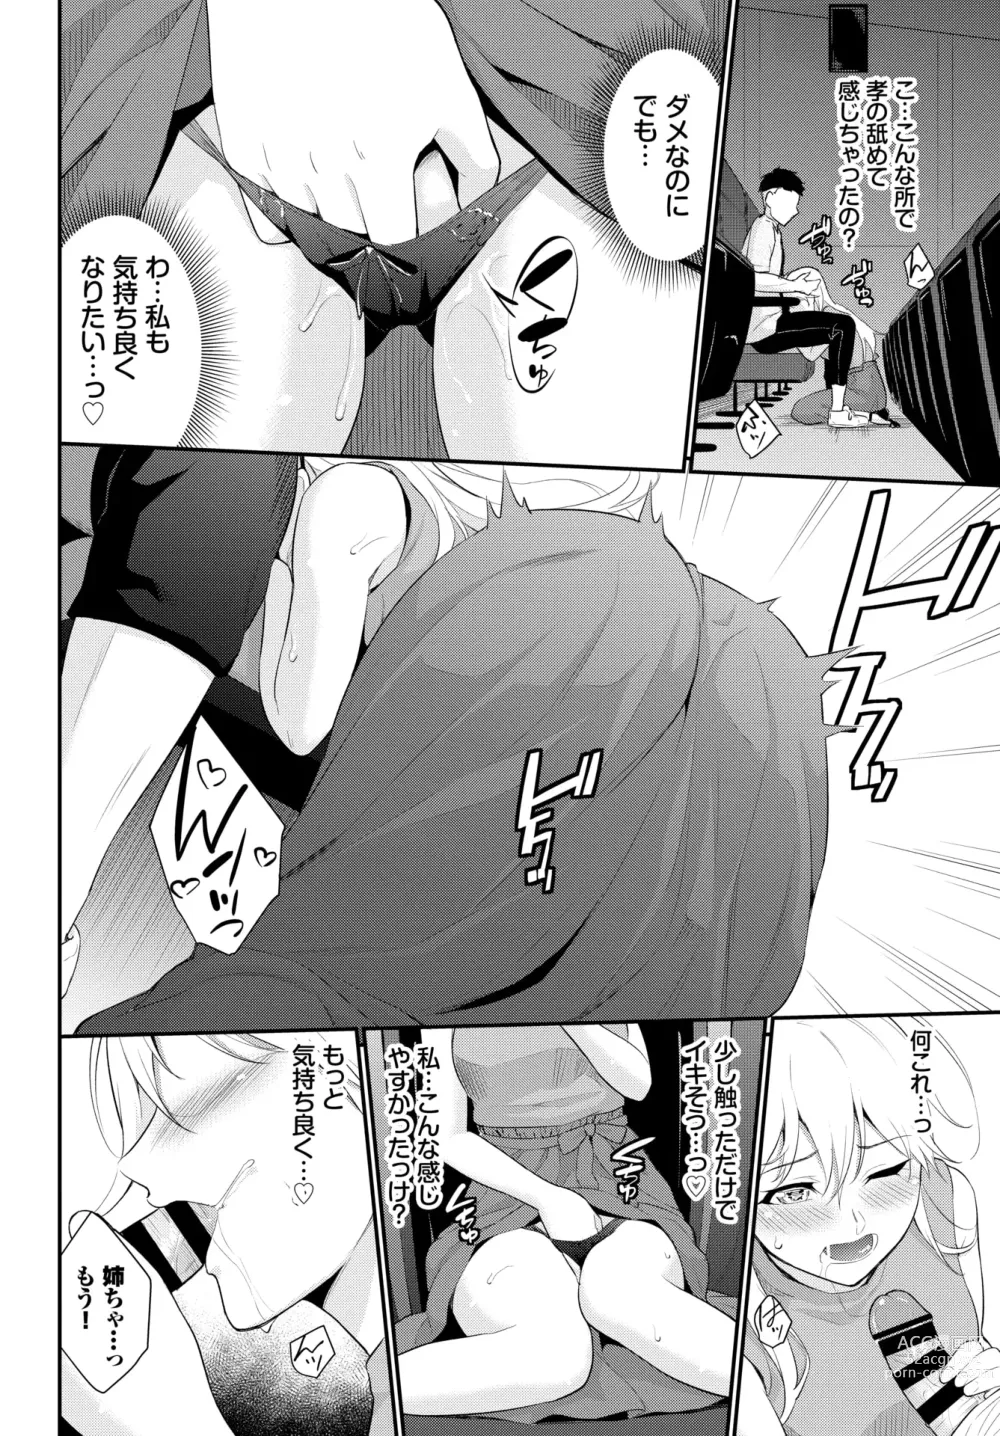 Page 10 of manga Hodad Girl